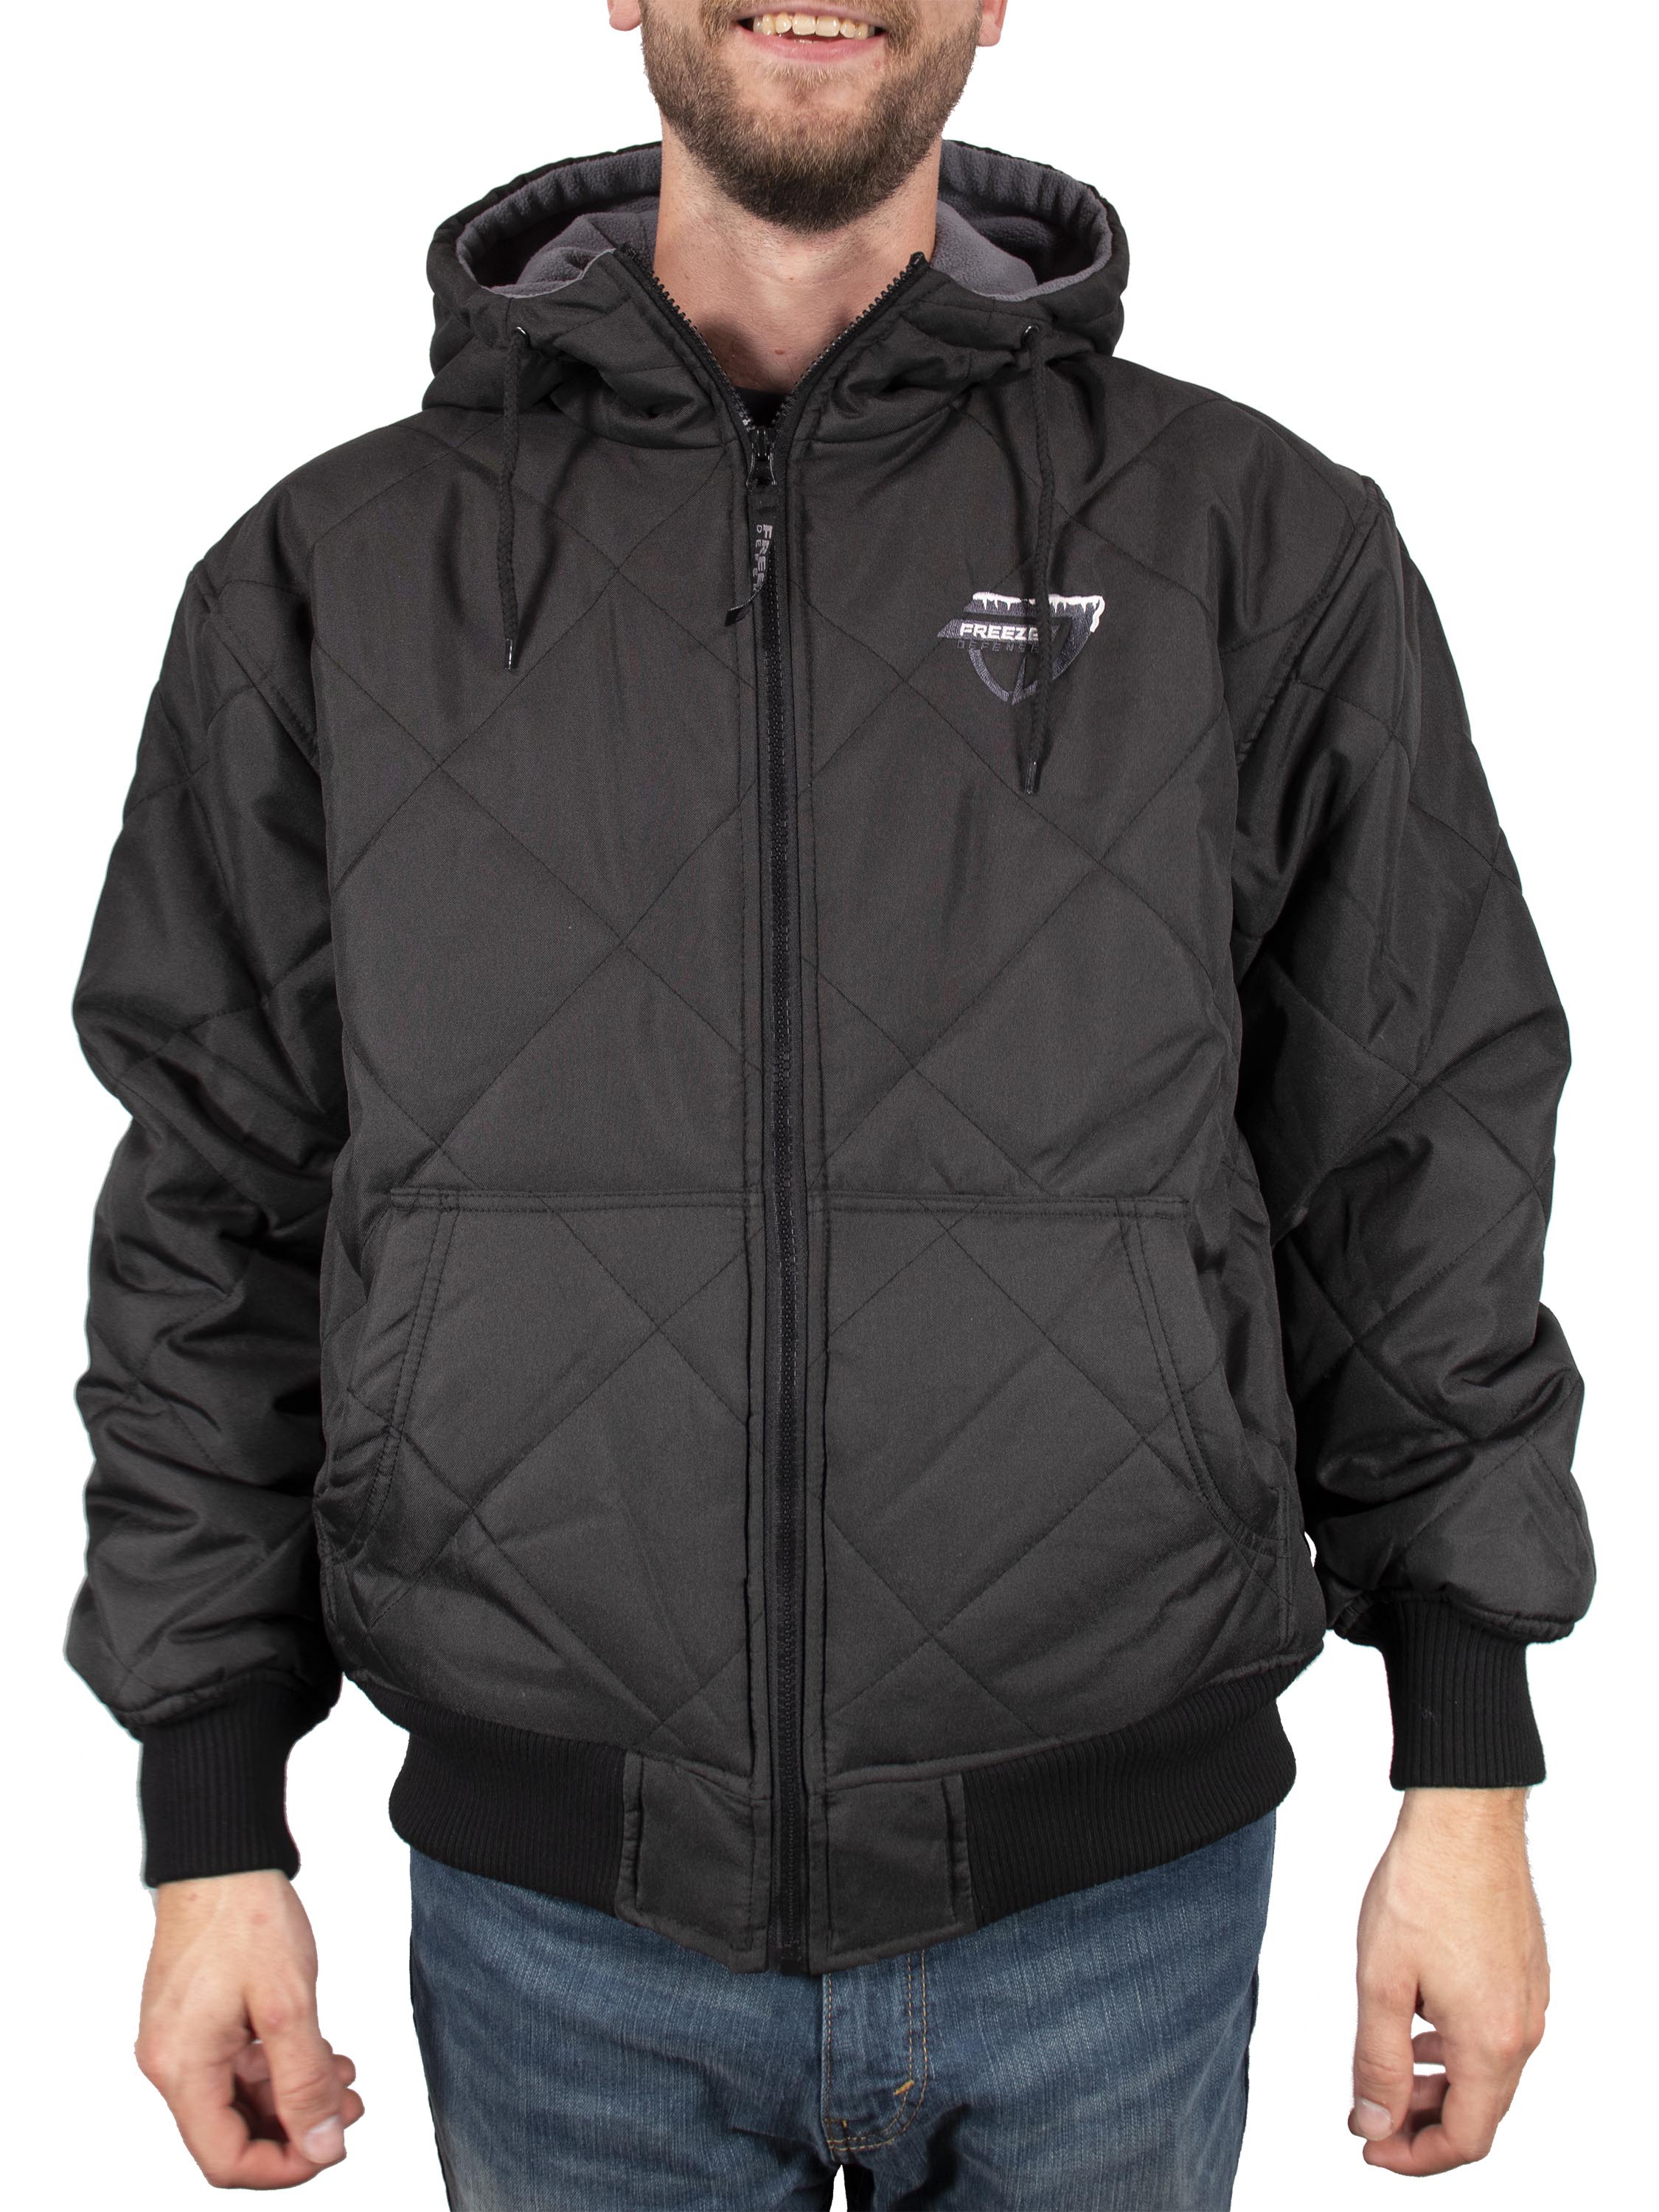 Qiangjinjiu Mens Thicken Coat Quilted Winter Camouflage Full-Zip Hood Down Jacket